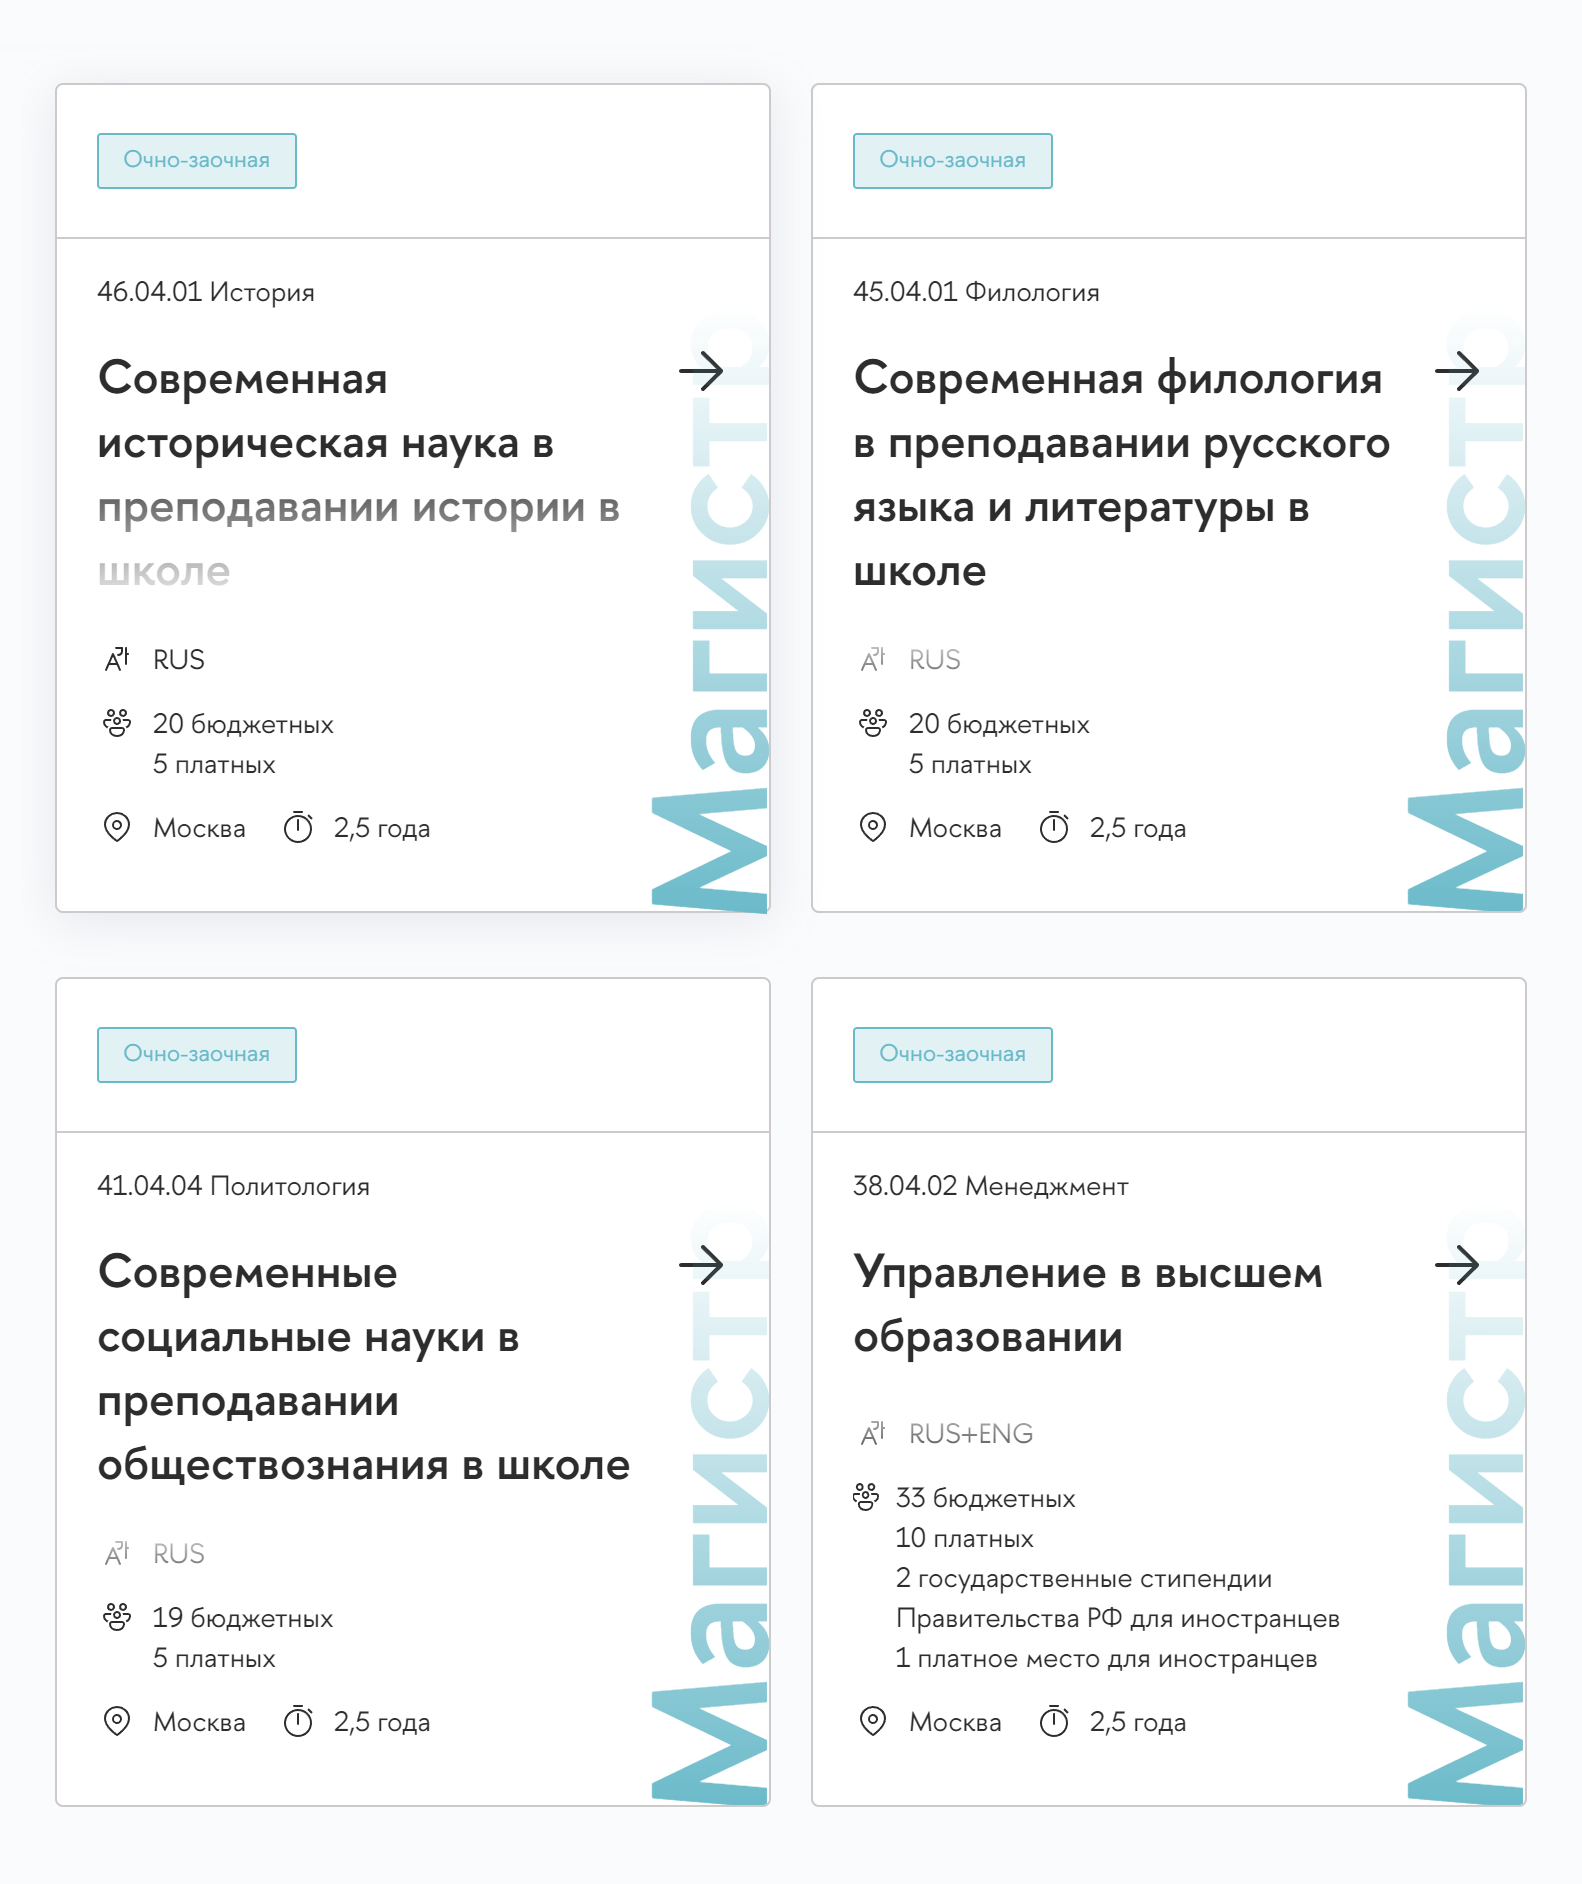 Во ВШЭ 177 очных программ магистратуры и только 7 очно⁠-⁠заочных. Источник: hse.ru